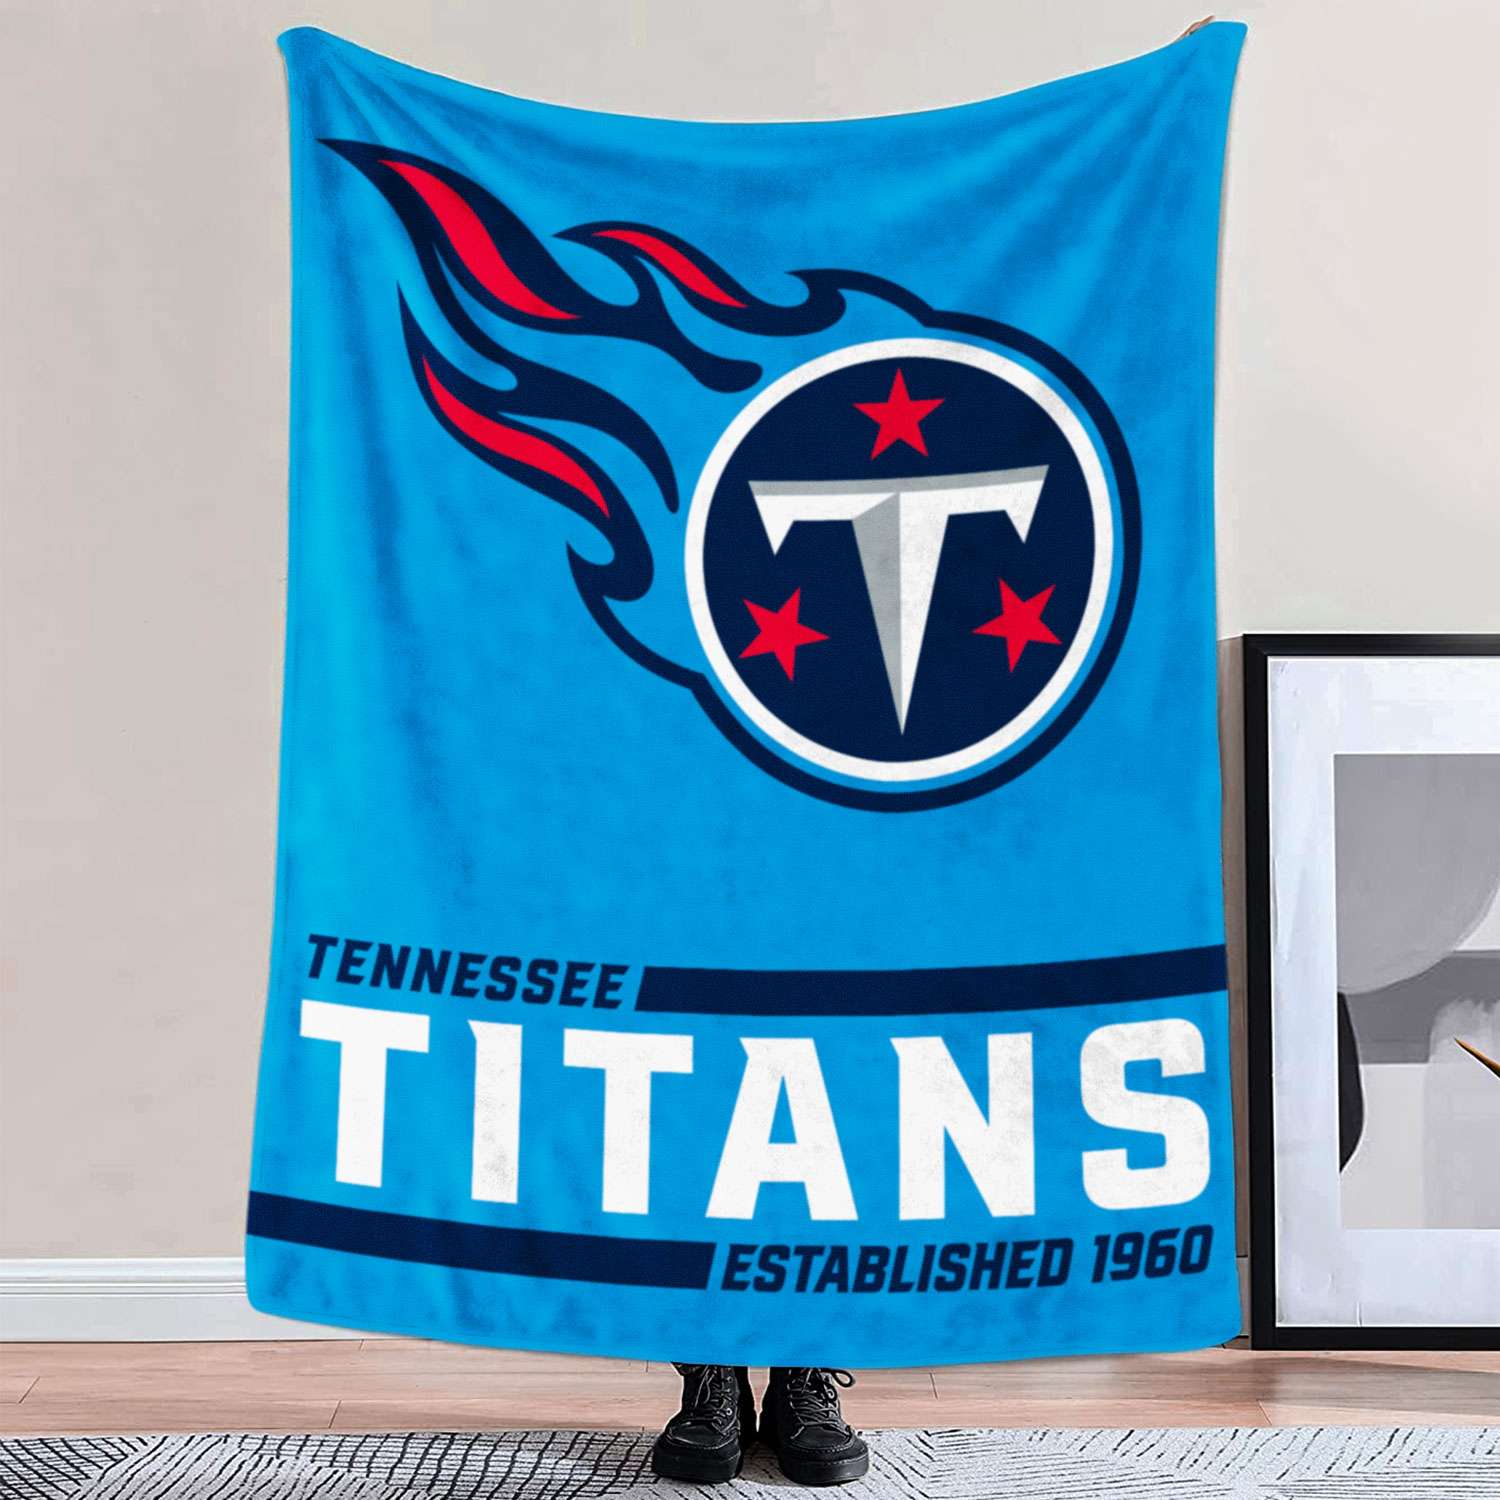 Tennessee Titans Established Logo Blanket